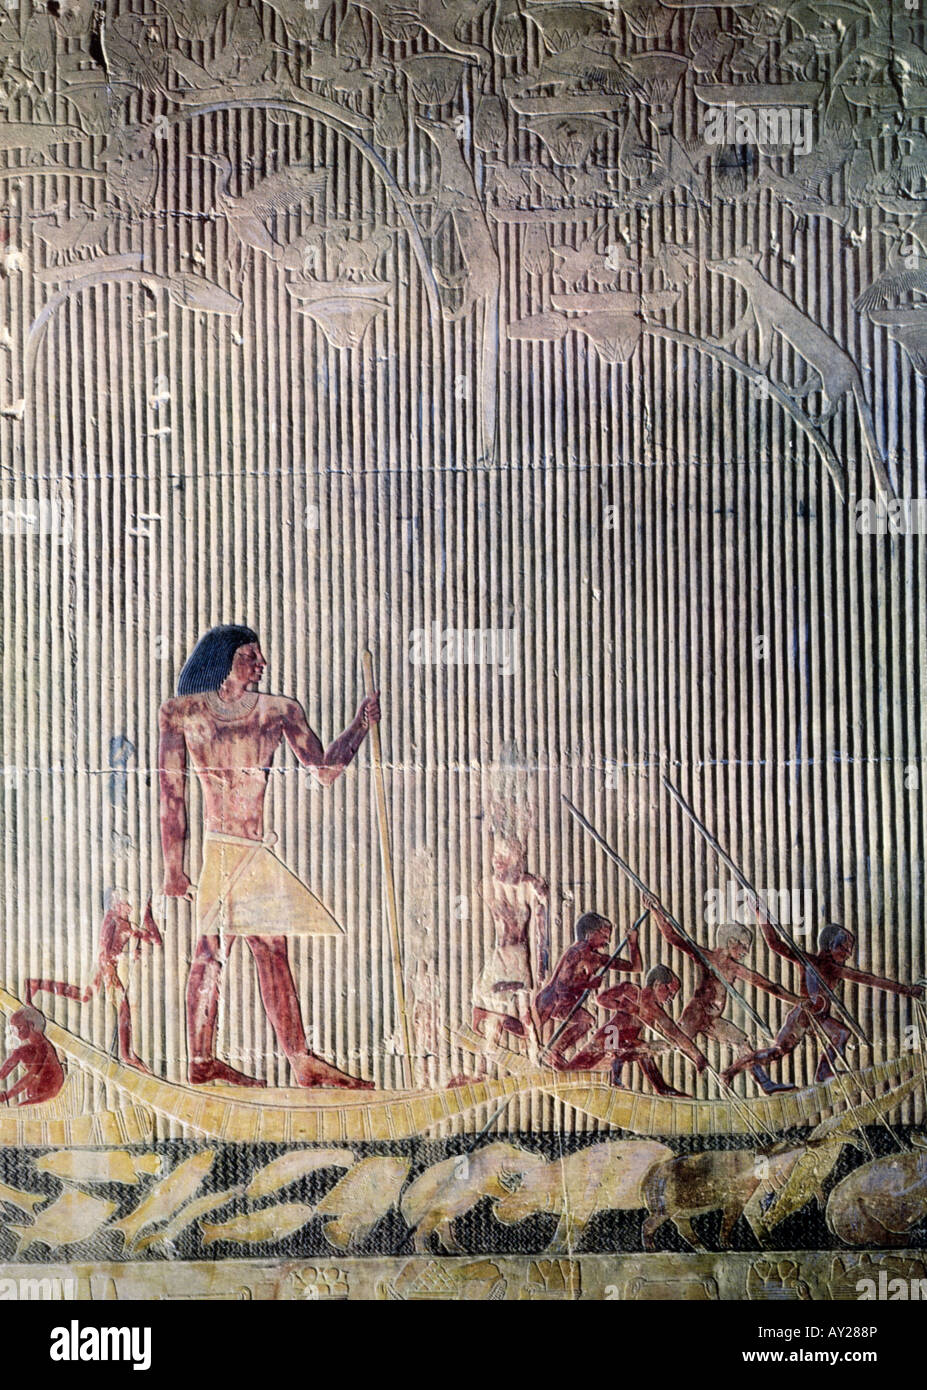 Belle arti, mondo antico Egitto, rilievo, caccia ippopotamo, tomba di Ti, circa 2400 BC, V dinastia, Saqqara, , artista del diritto d'autore non deve essere cancellata Foto Stock